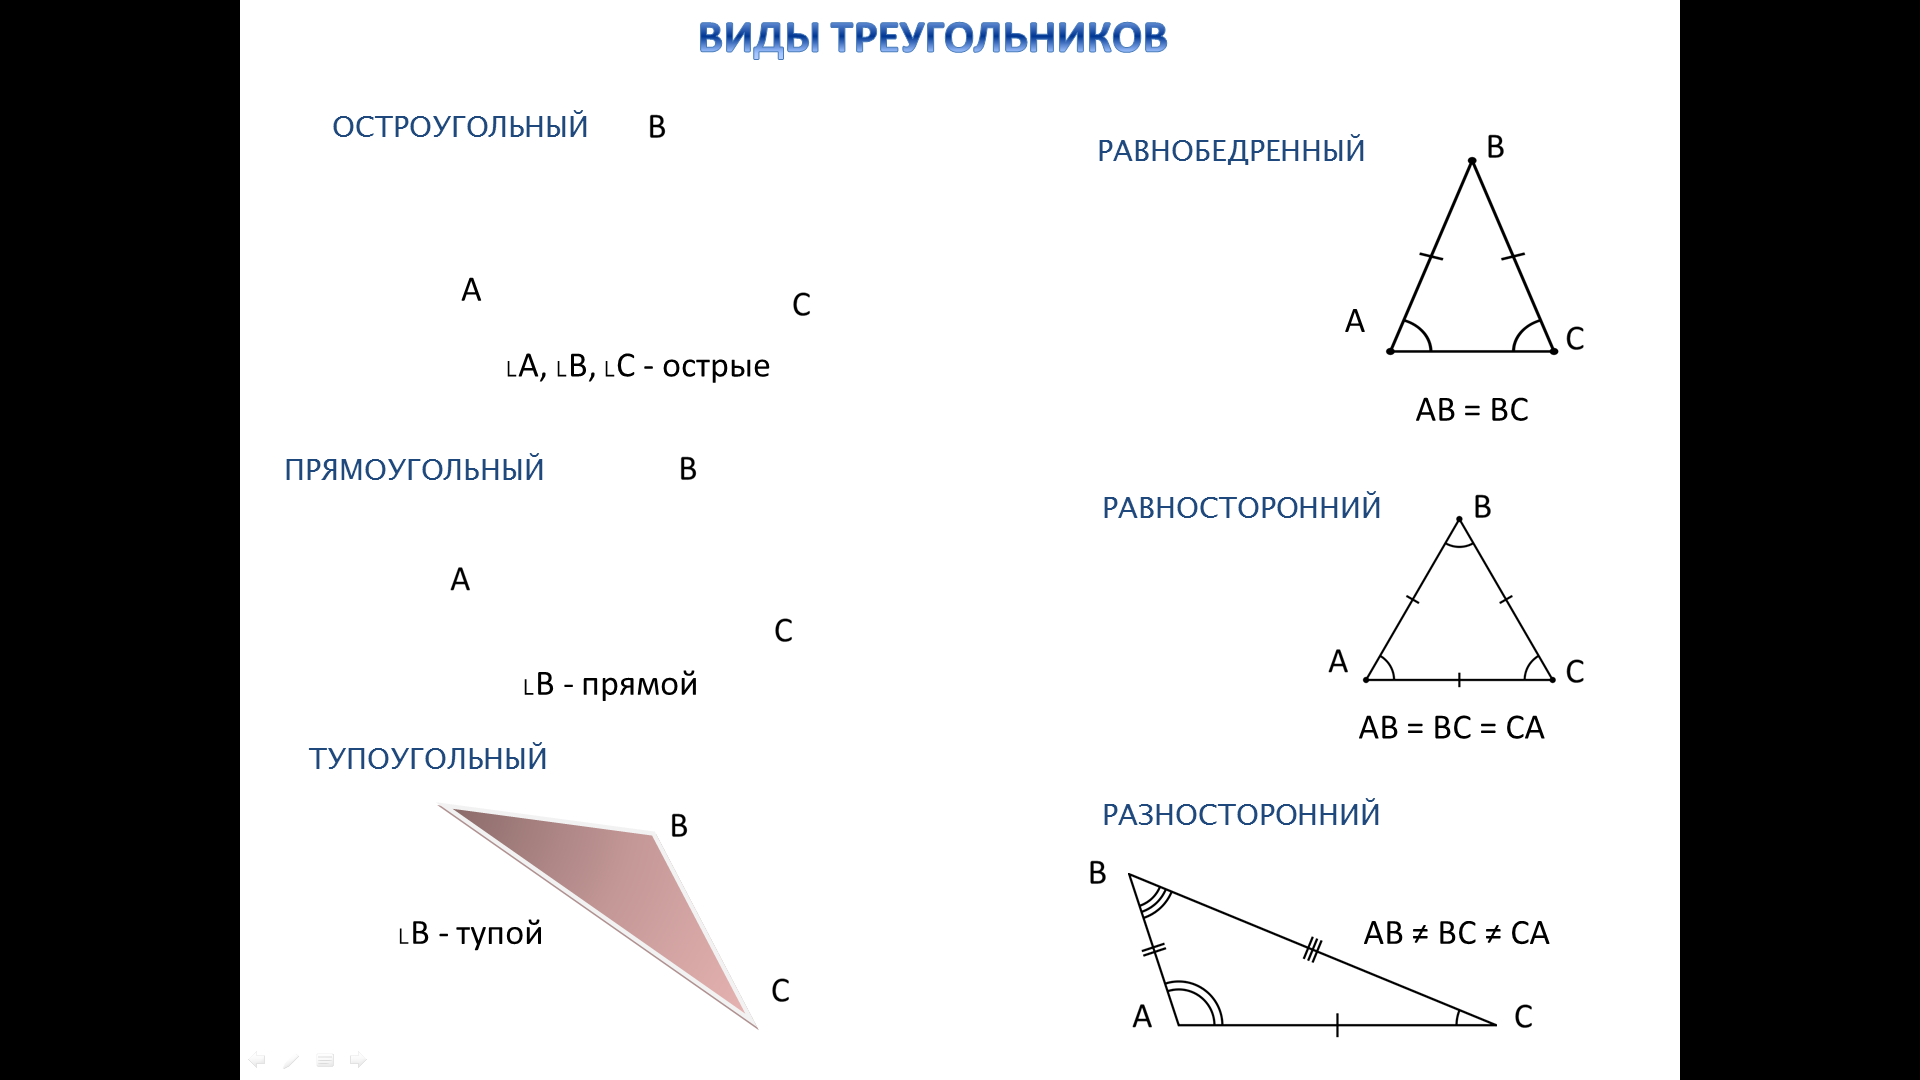 Виды треугольников. Равнобедренный остроугольный треугольник. Равнобедренный треугольник тупоугольный треугольник.